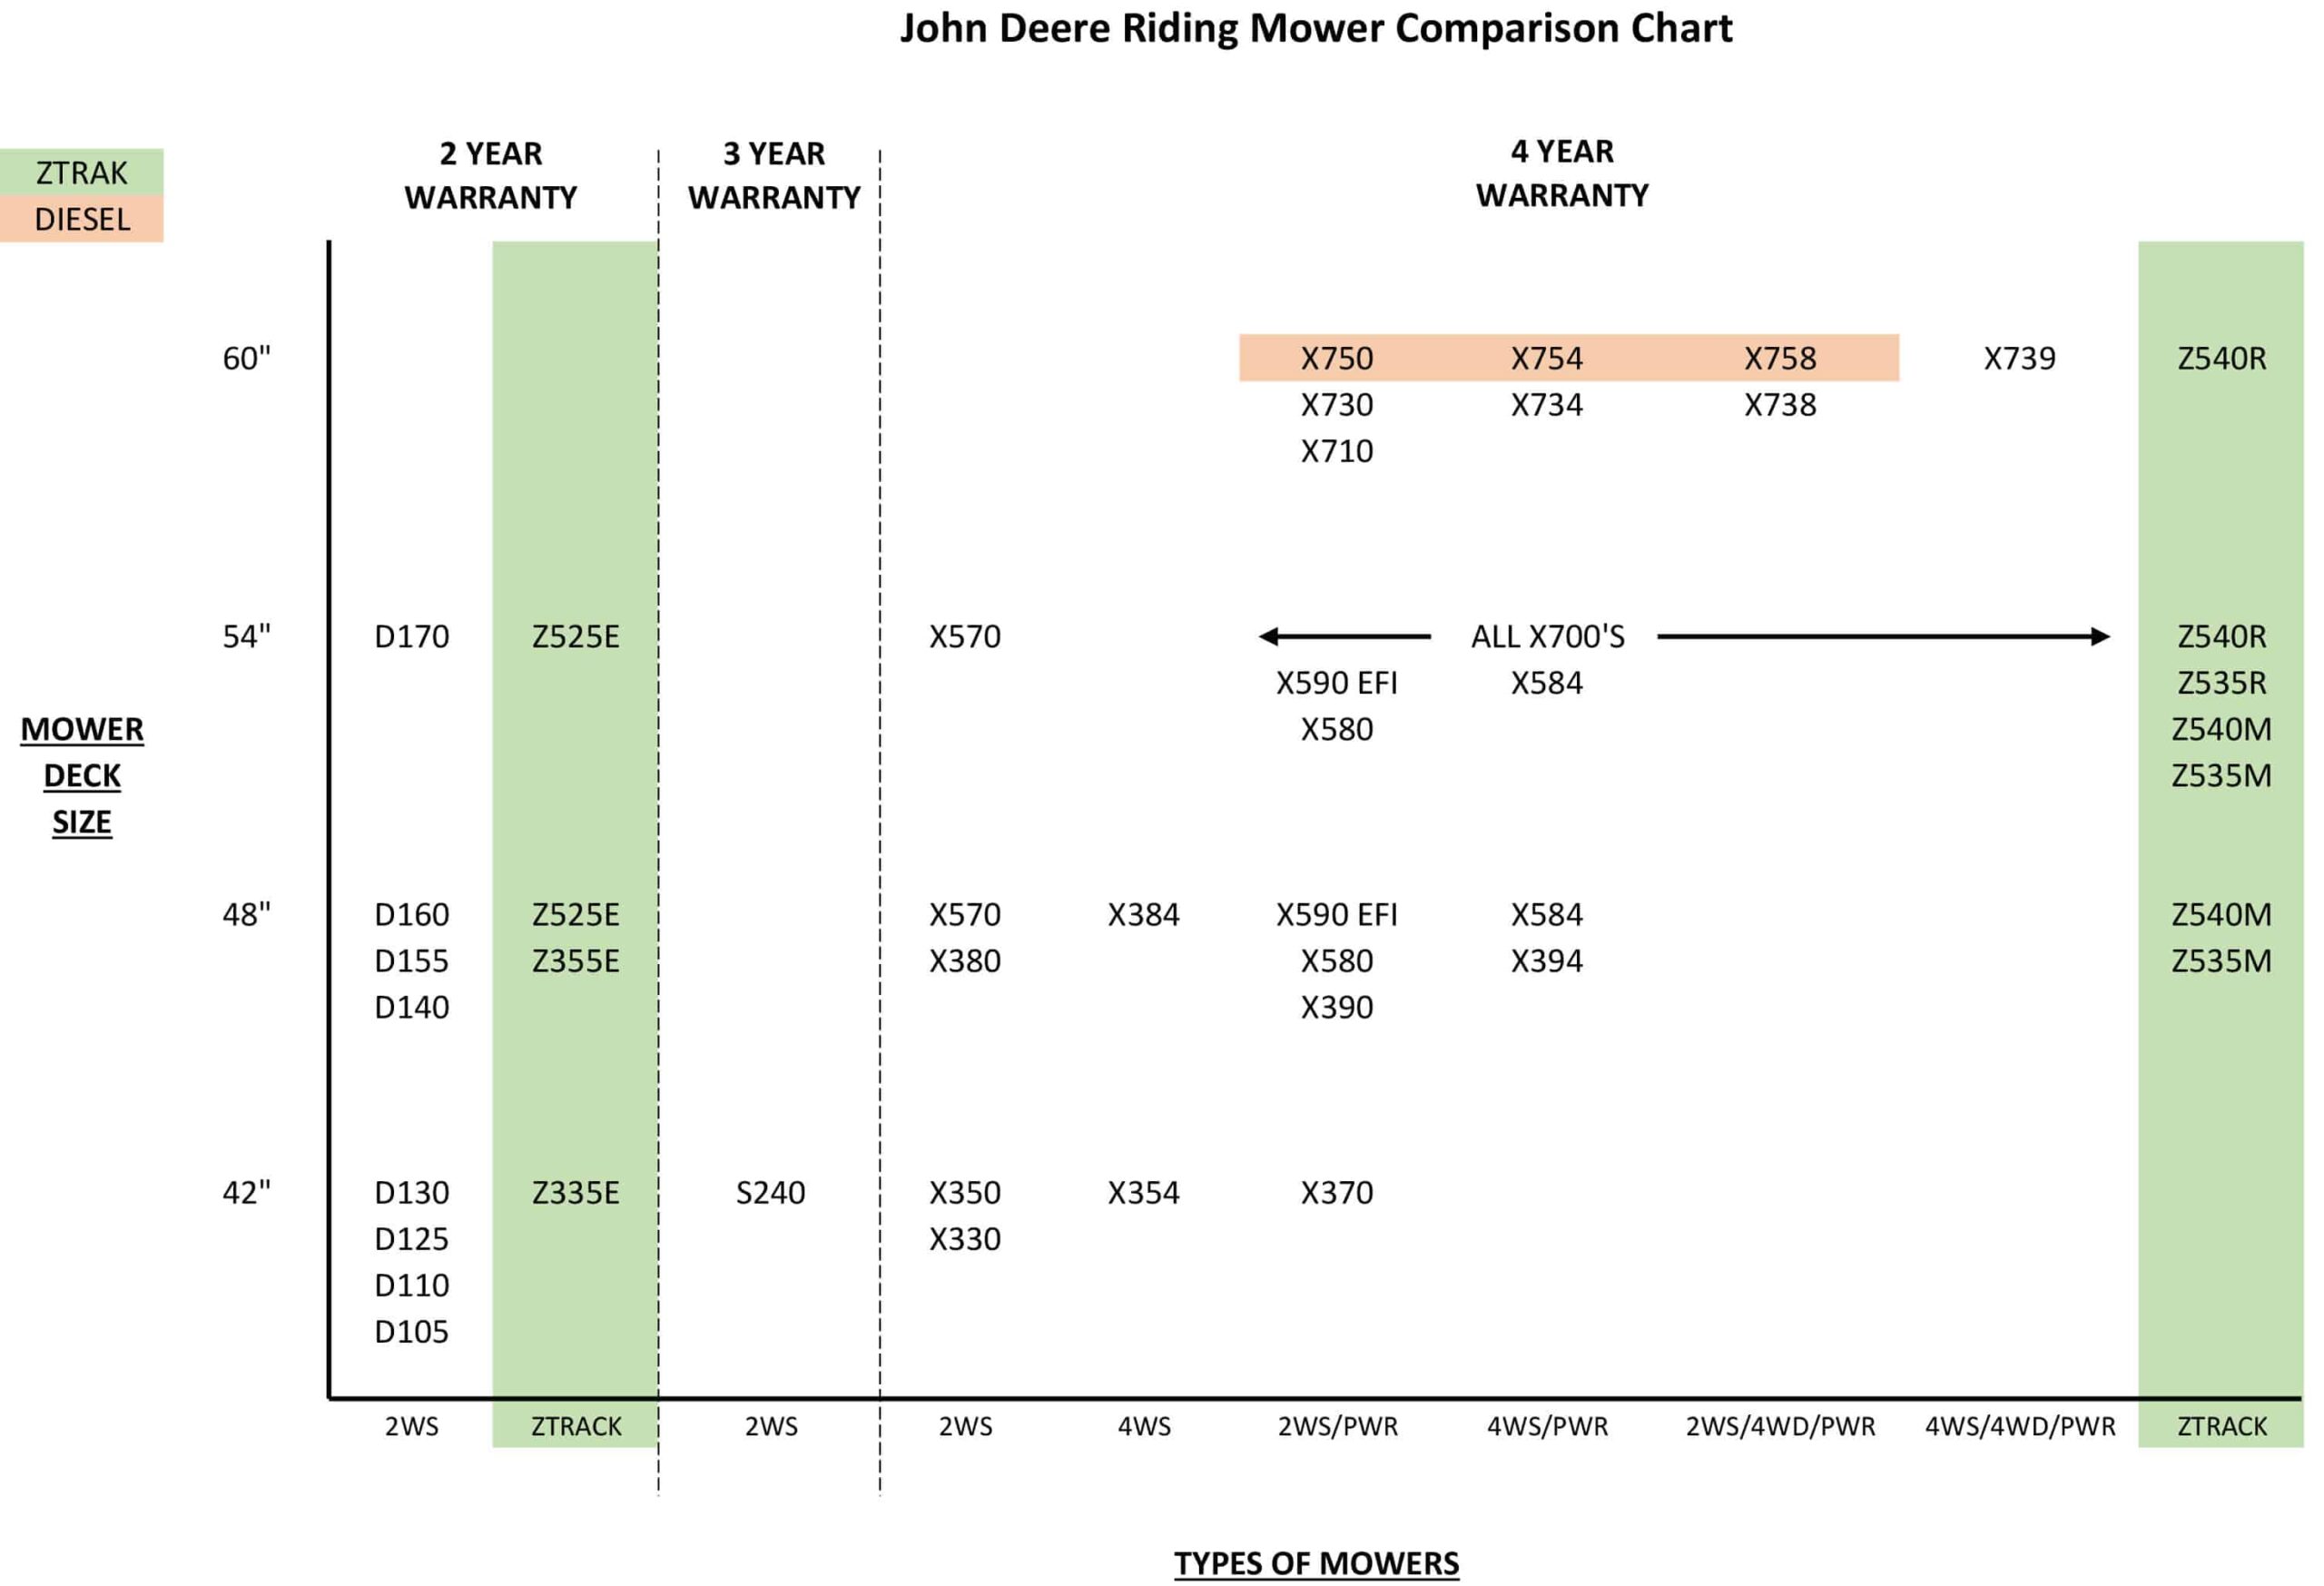 Comparison chart between John Deere riding mowers and zero-turn mowers